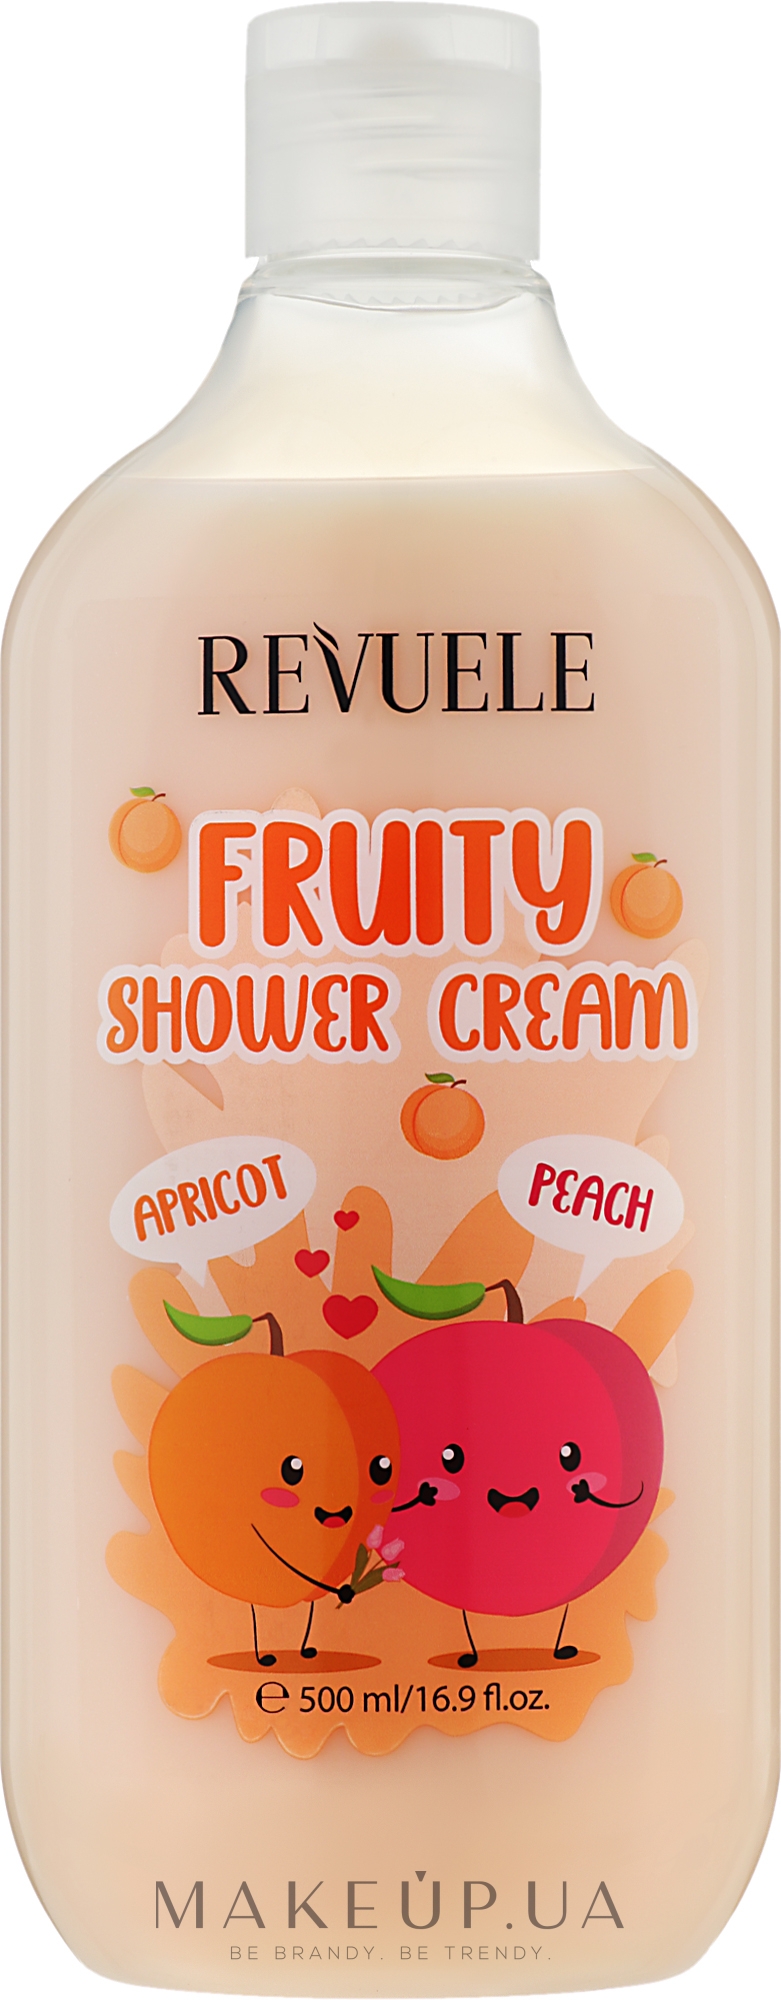 Крем для душа с абрикосом и персиком - Revuele Fruity Shower Cream Apricot and Peach — фото 500ml